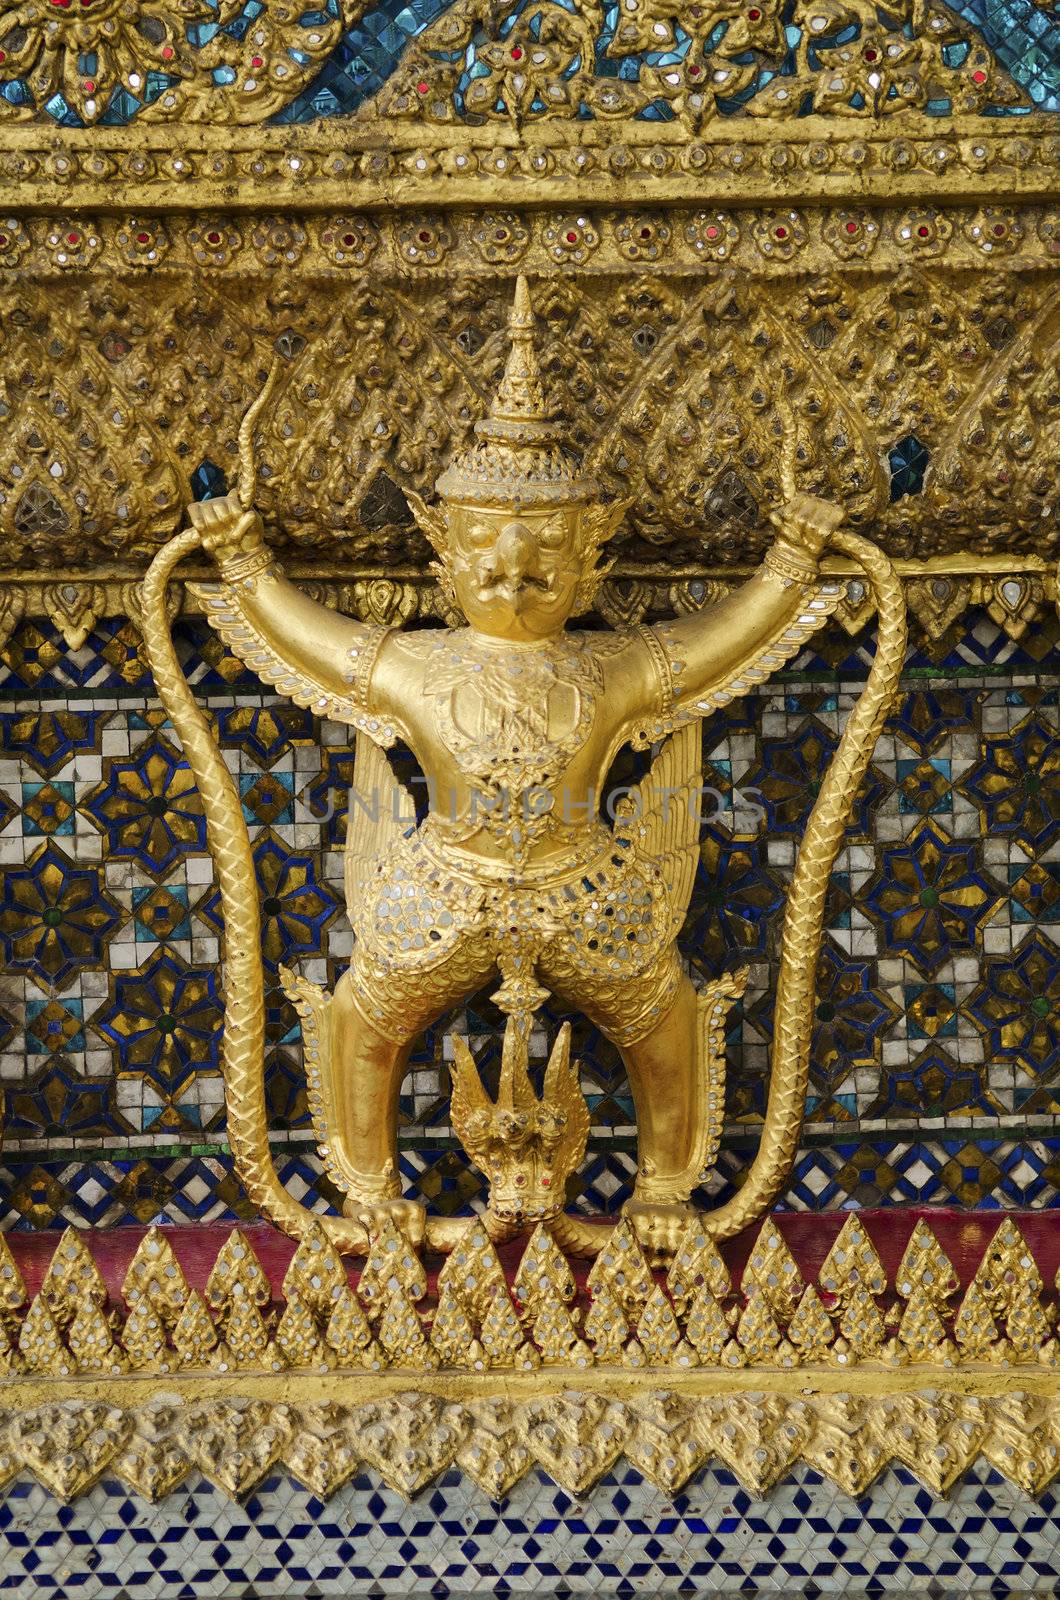 grand palace temple detail bangkok thailand by jackmalipan